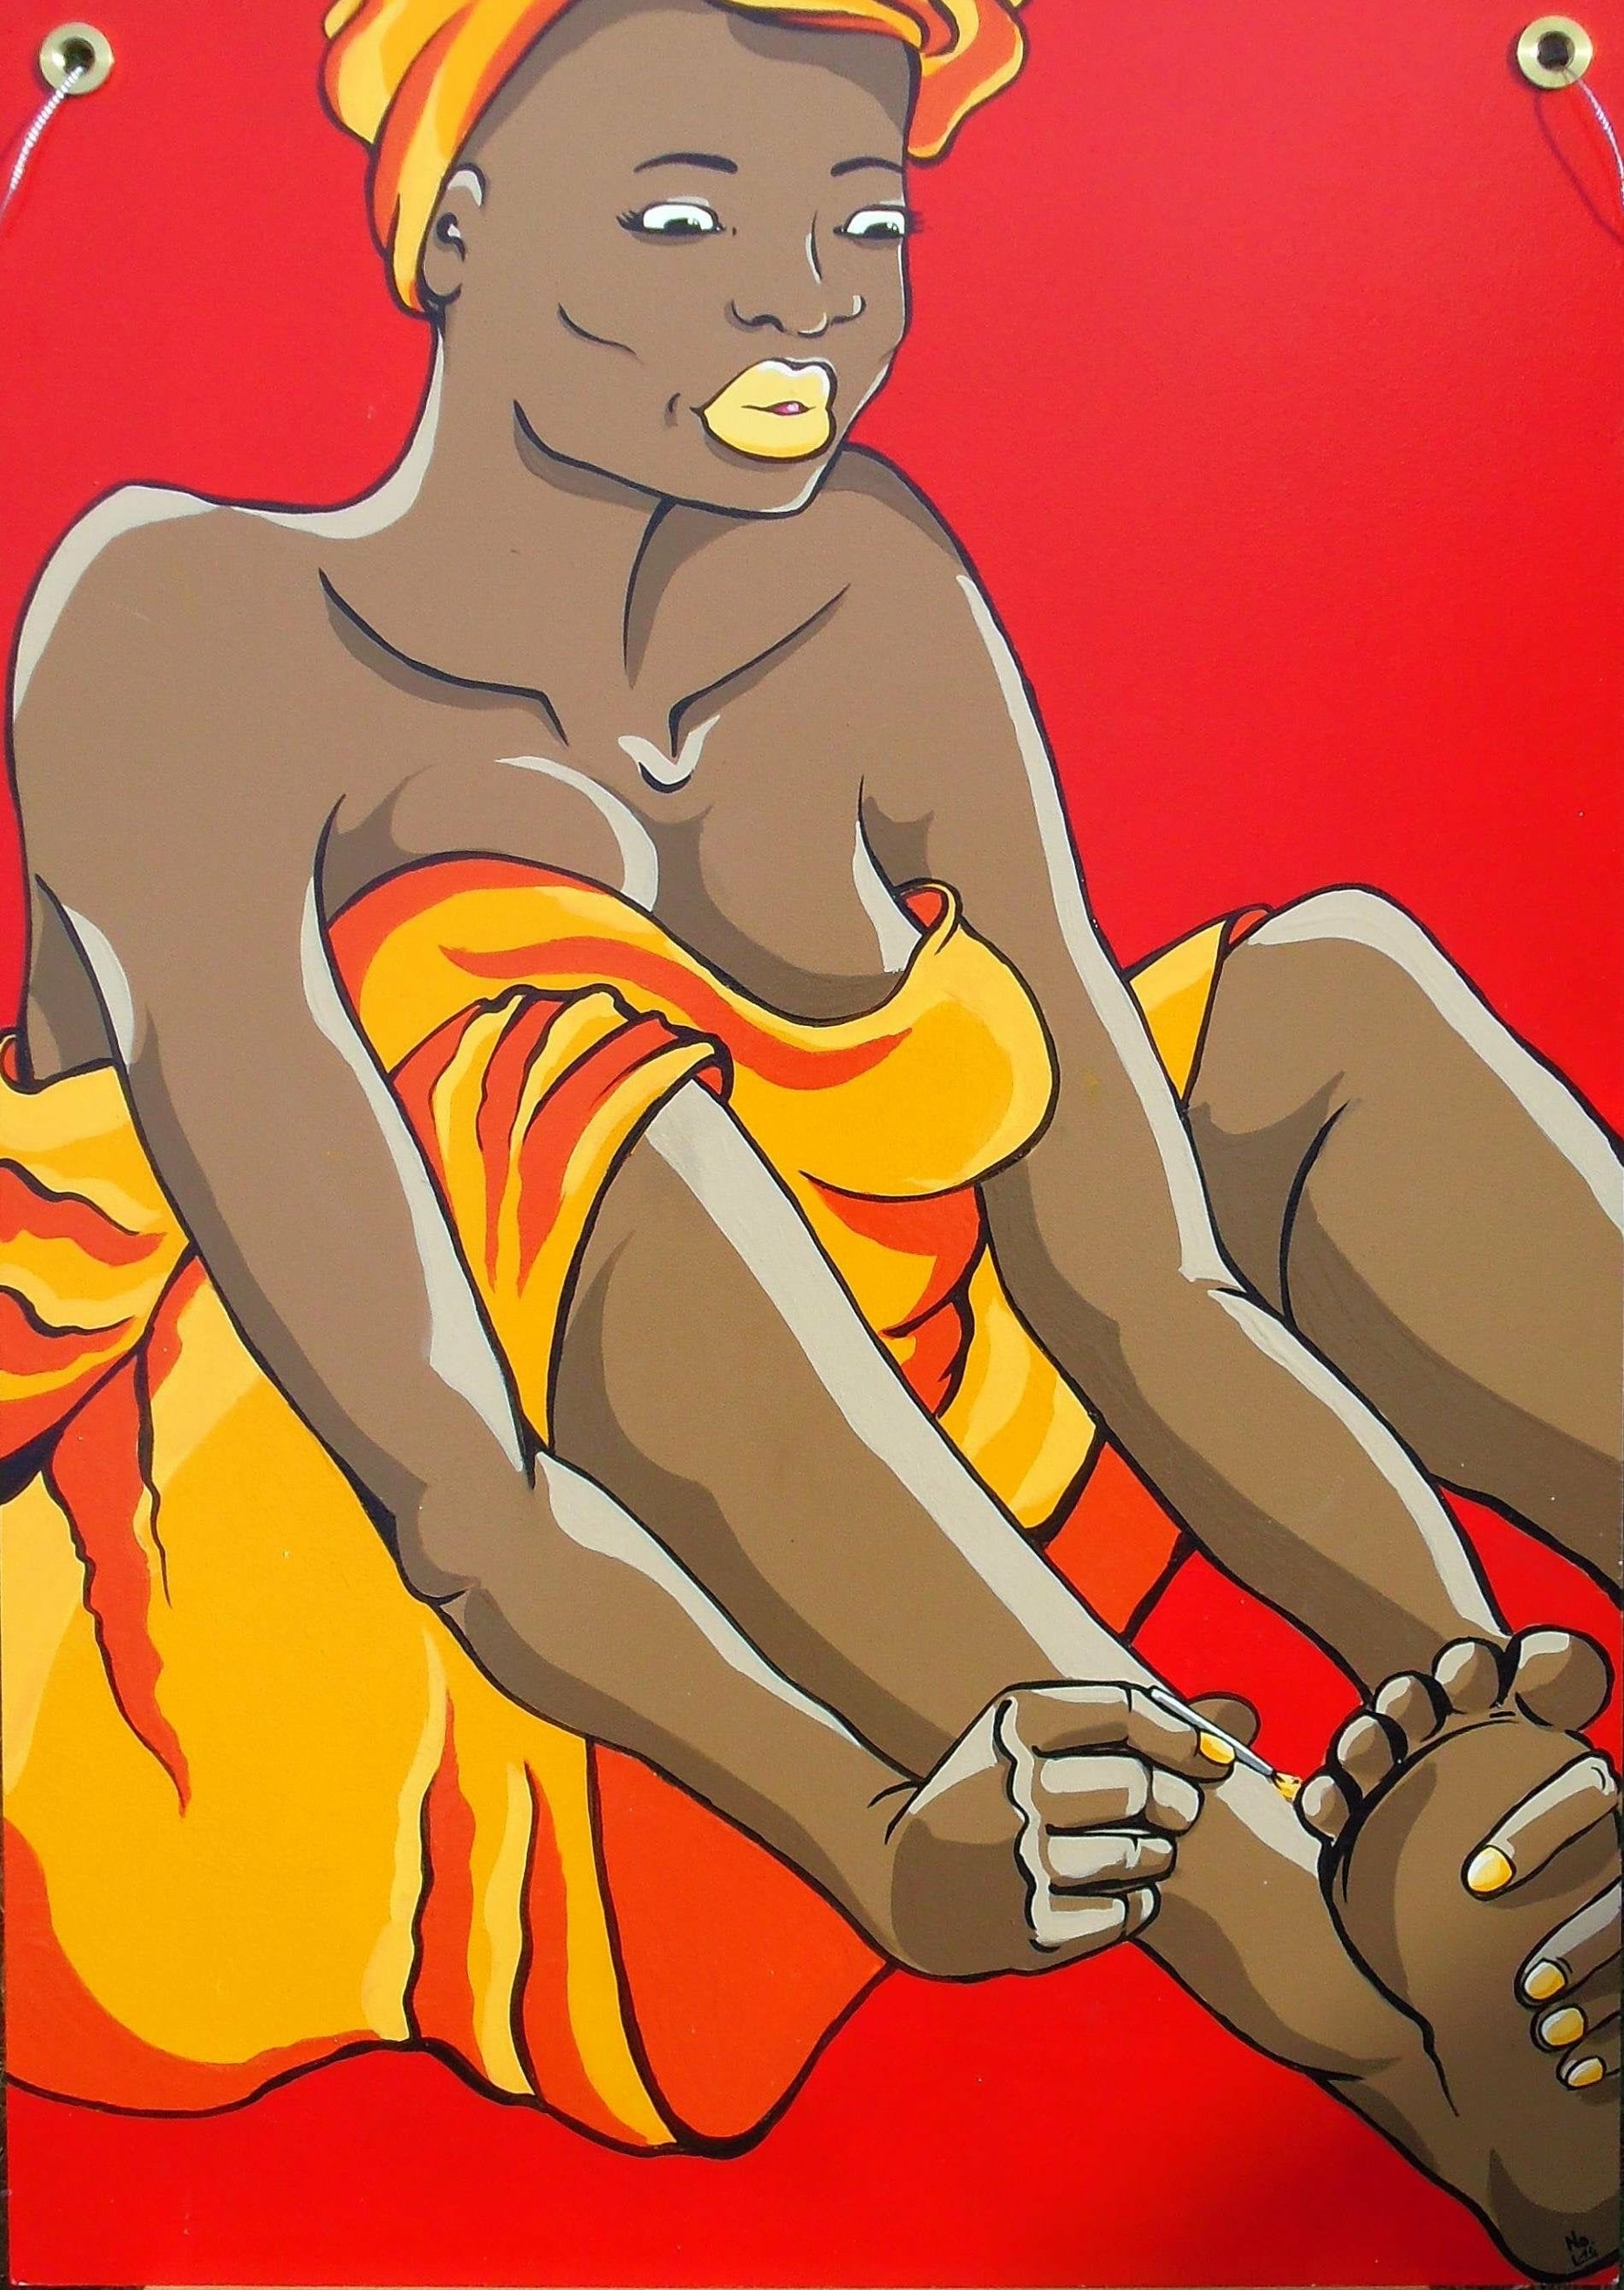 tableau bois XL portrait de femme noire